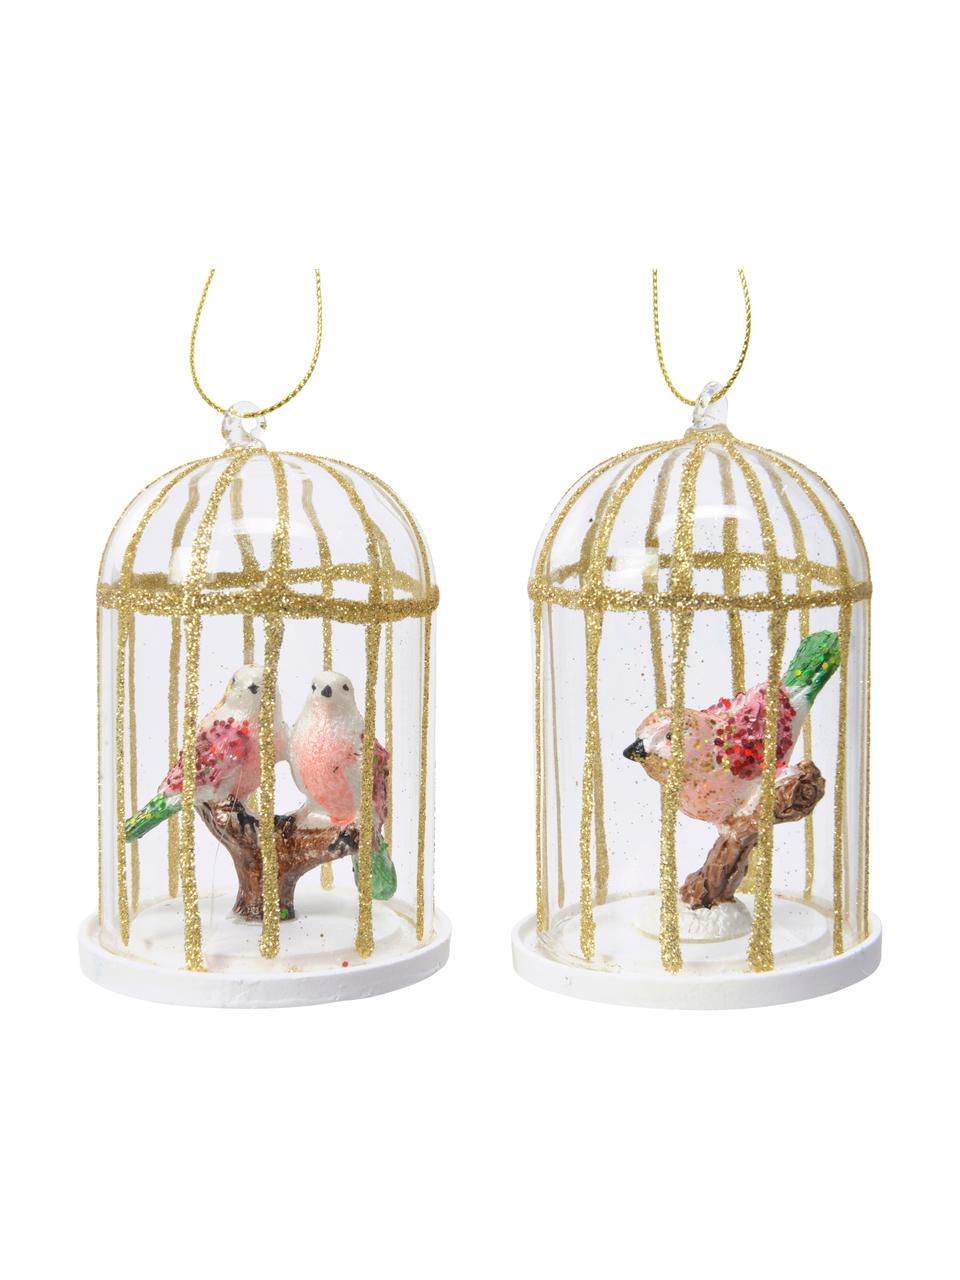 Adornos navideños Cages, 2 uds., Figura: vidrio, Transparente, dorado, rosa, verde, Ø 7 x Al 10 cm